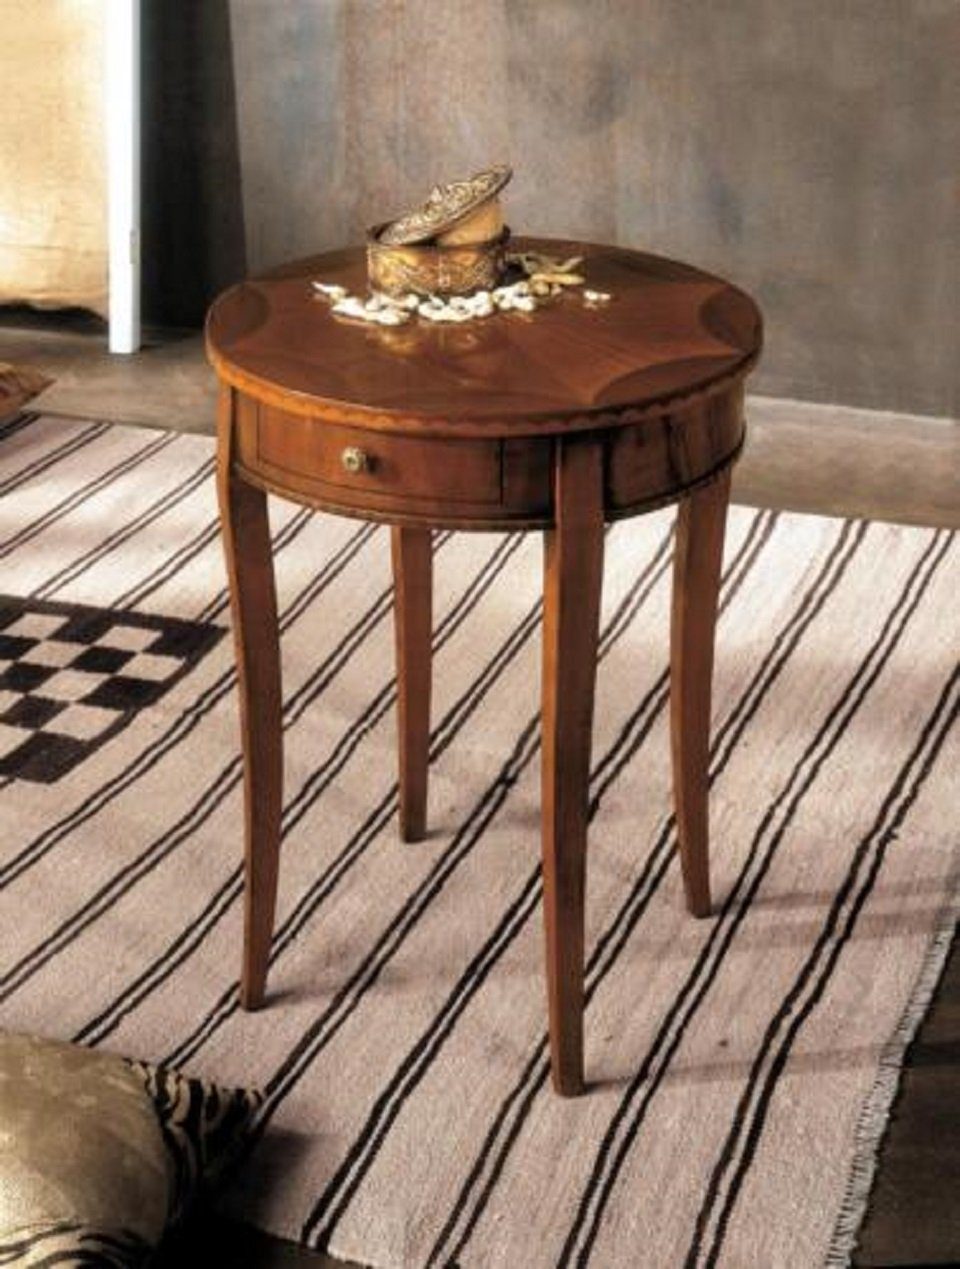 Couchtisch Made Wohnzimmertisch in Tisch Möbel (Beistelltisch), Design Beistelltisch Europe JVmoebel Beistelltisch Tische